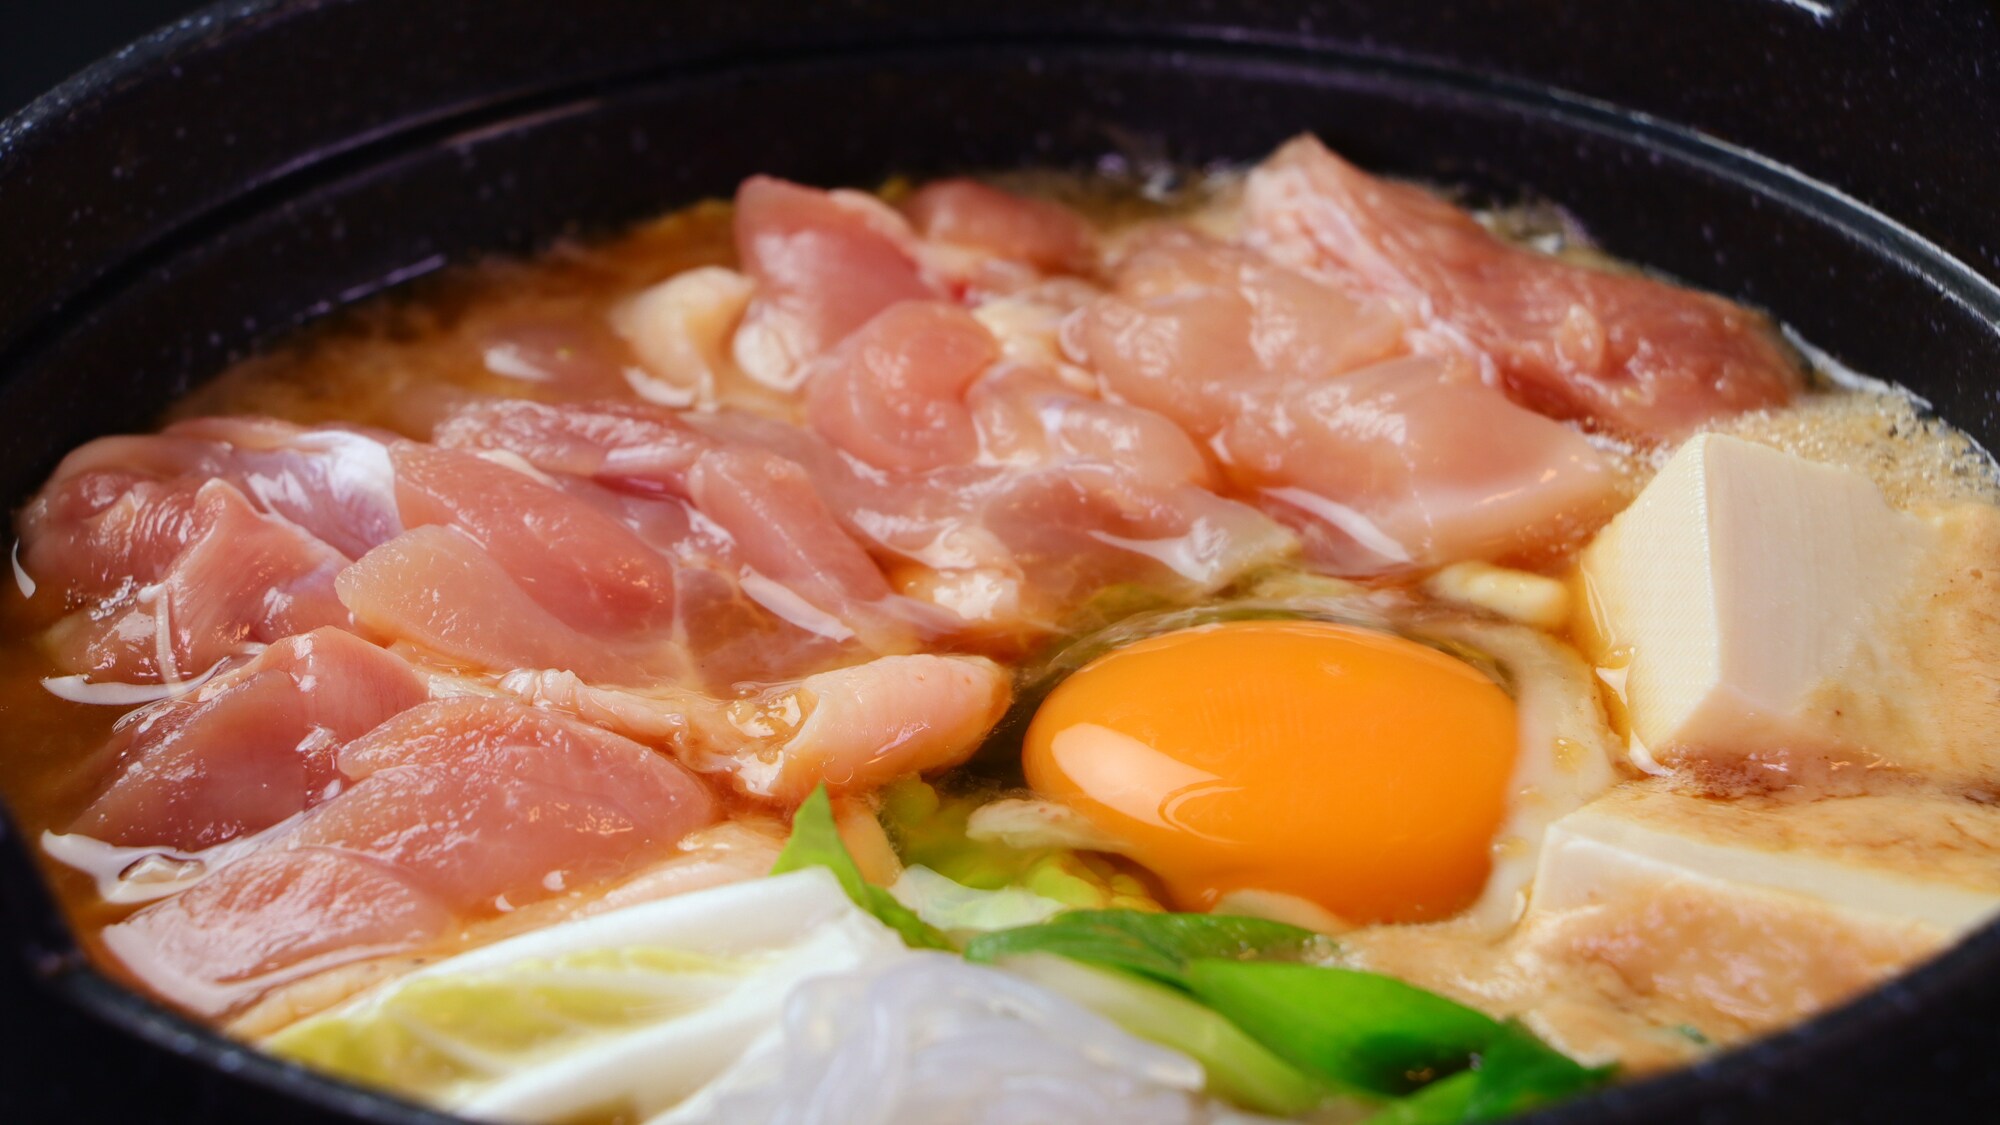 [Local chicken sukiyaki] The soup has a rich flavor